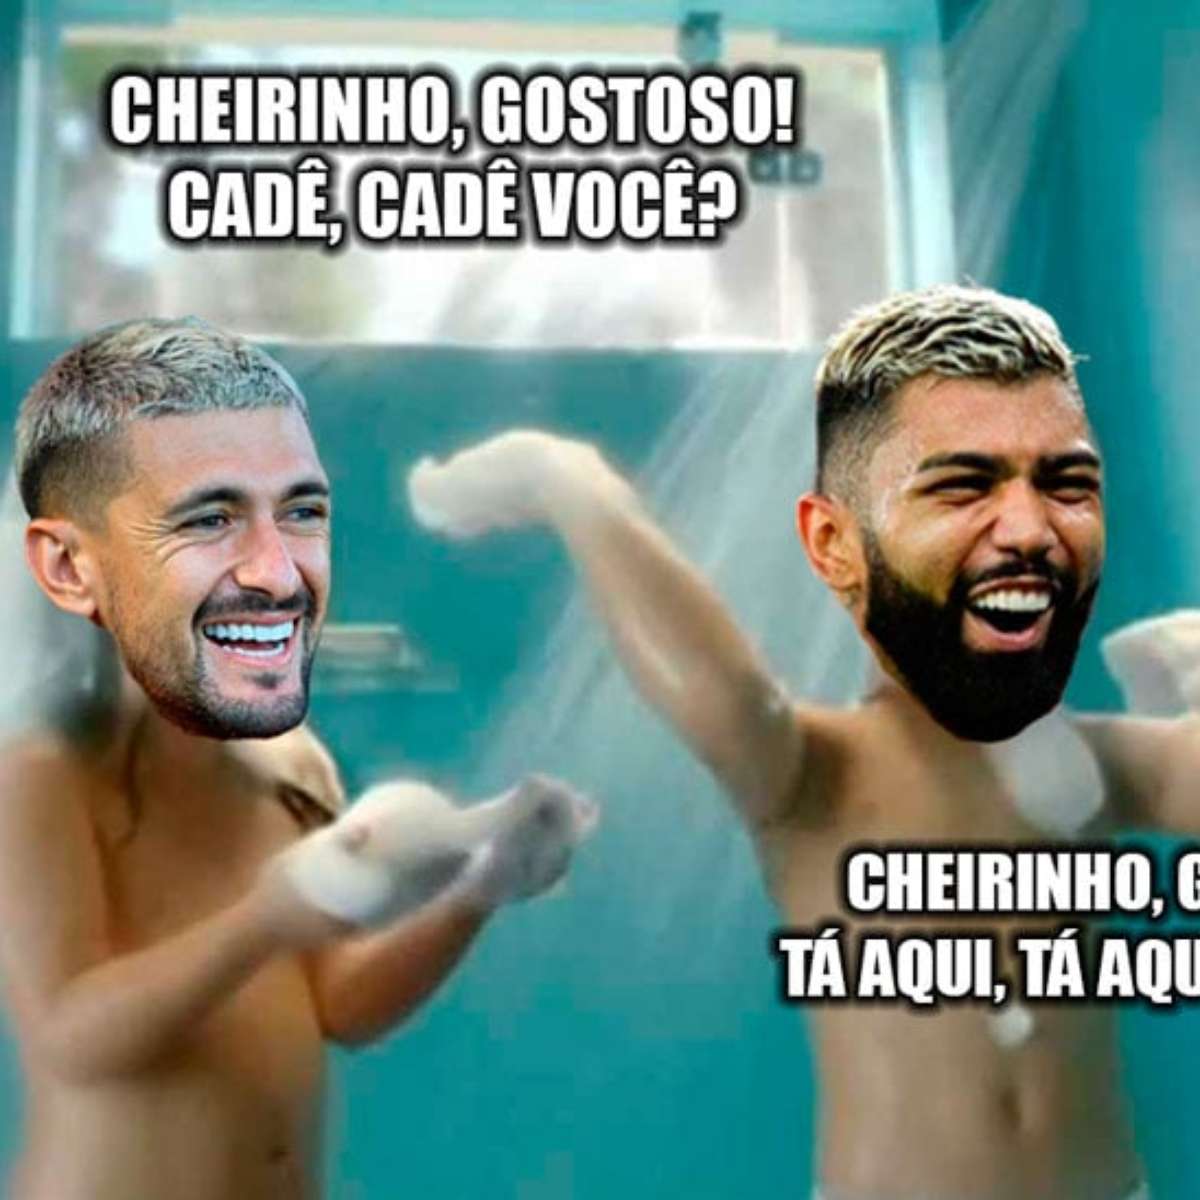 Flamengo e Ceni são alvos de memes após time ser eliminado da Libertadores